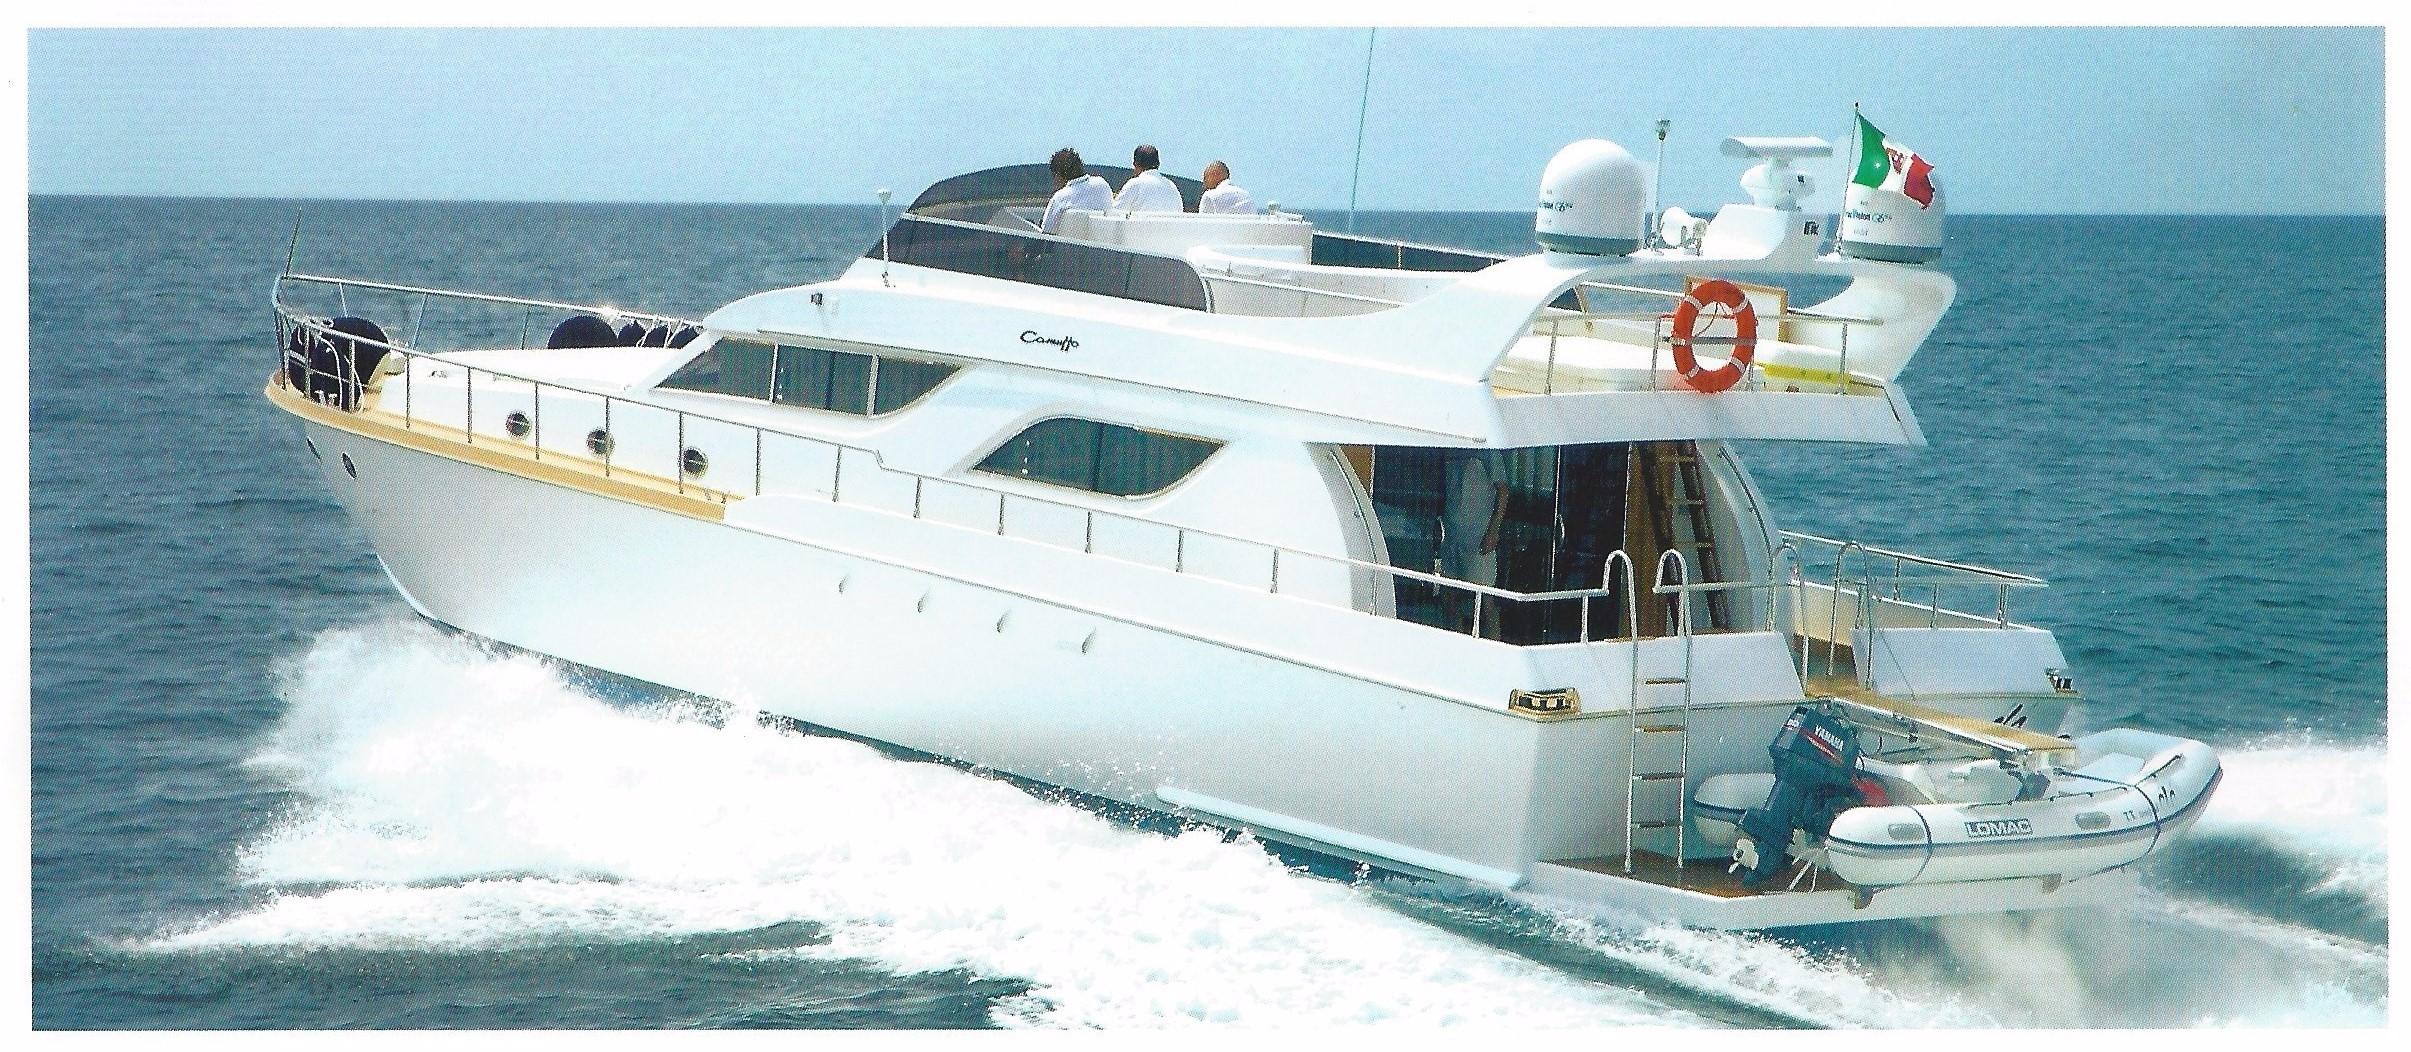 camuffo yacht